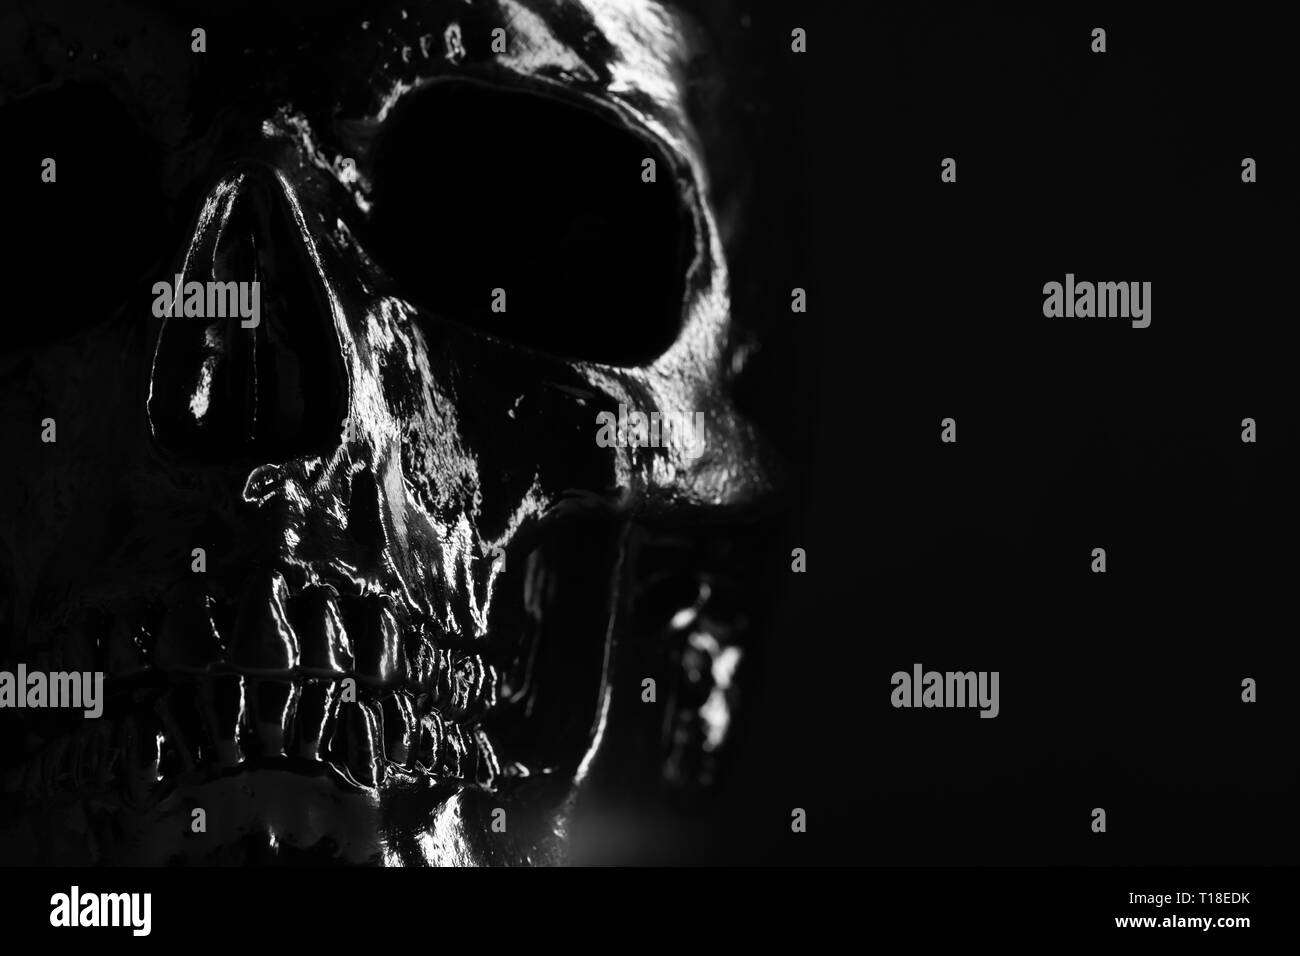 Modèle de crâne humain peints de noir sur fond noir avec éclairage. Concept de la peur et l'horreur, Halloween. Copy space Banque D'Images